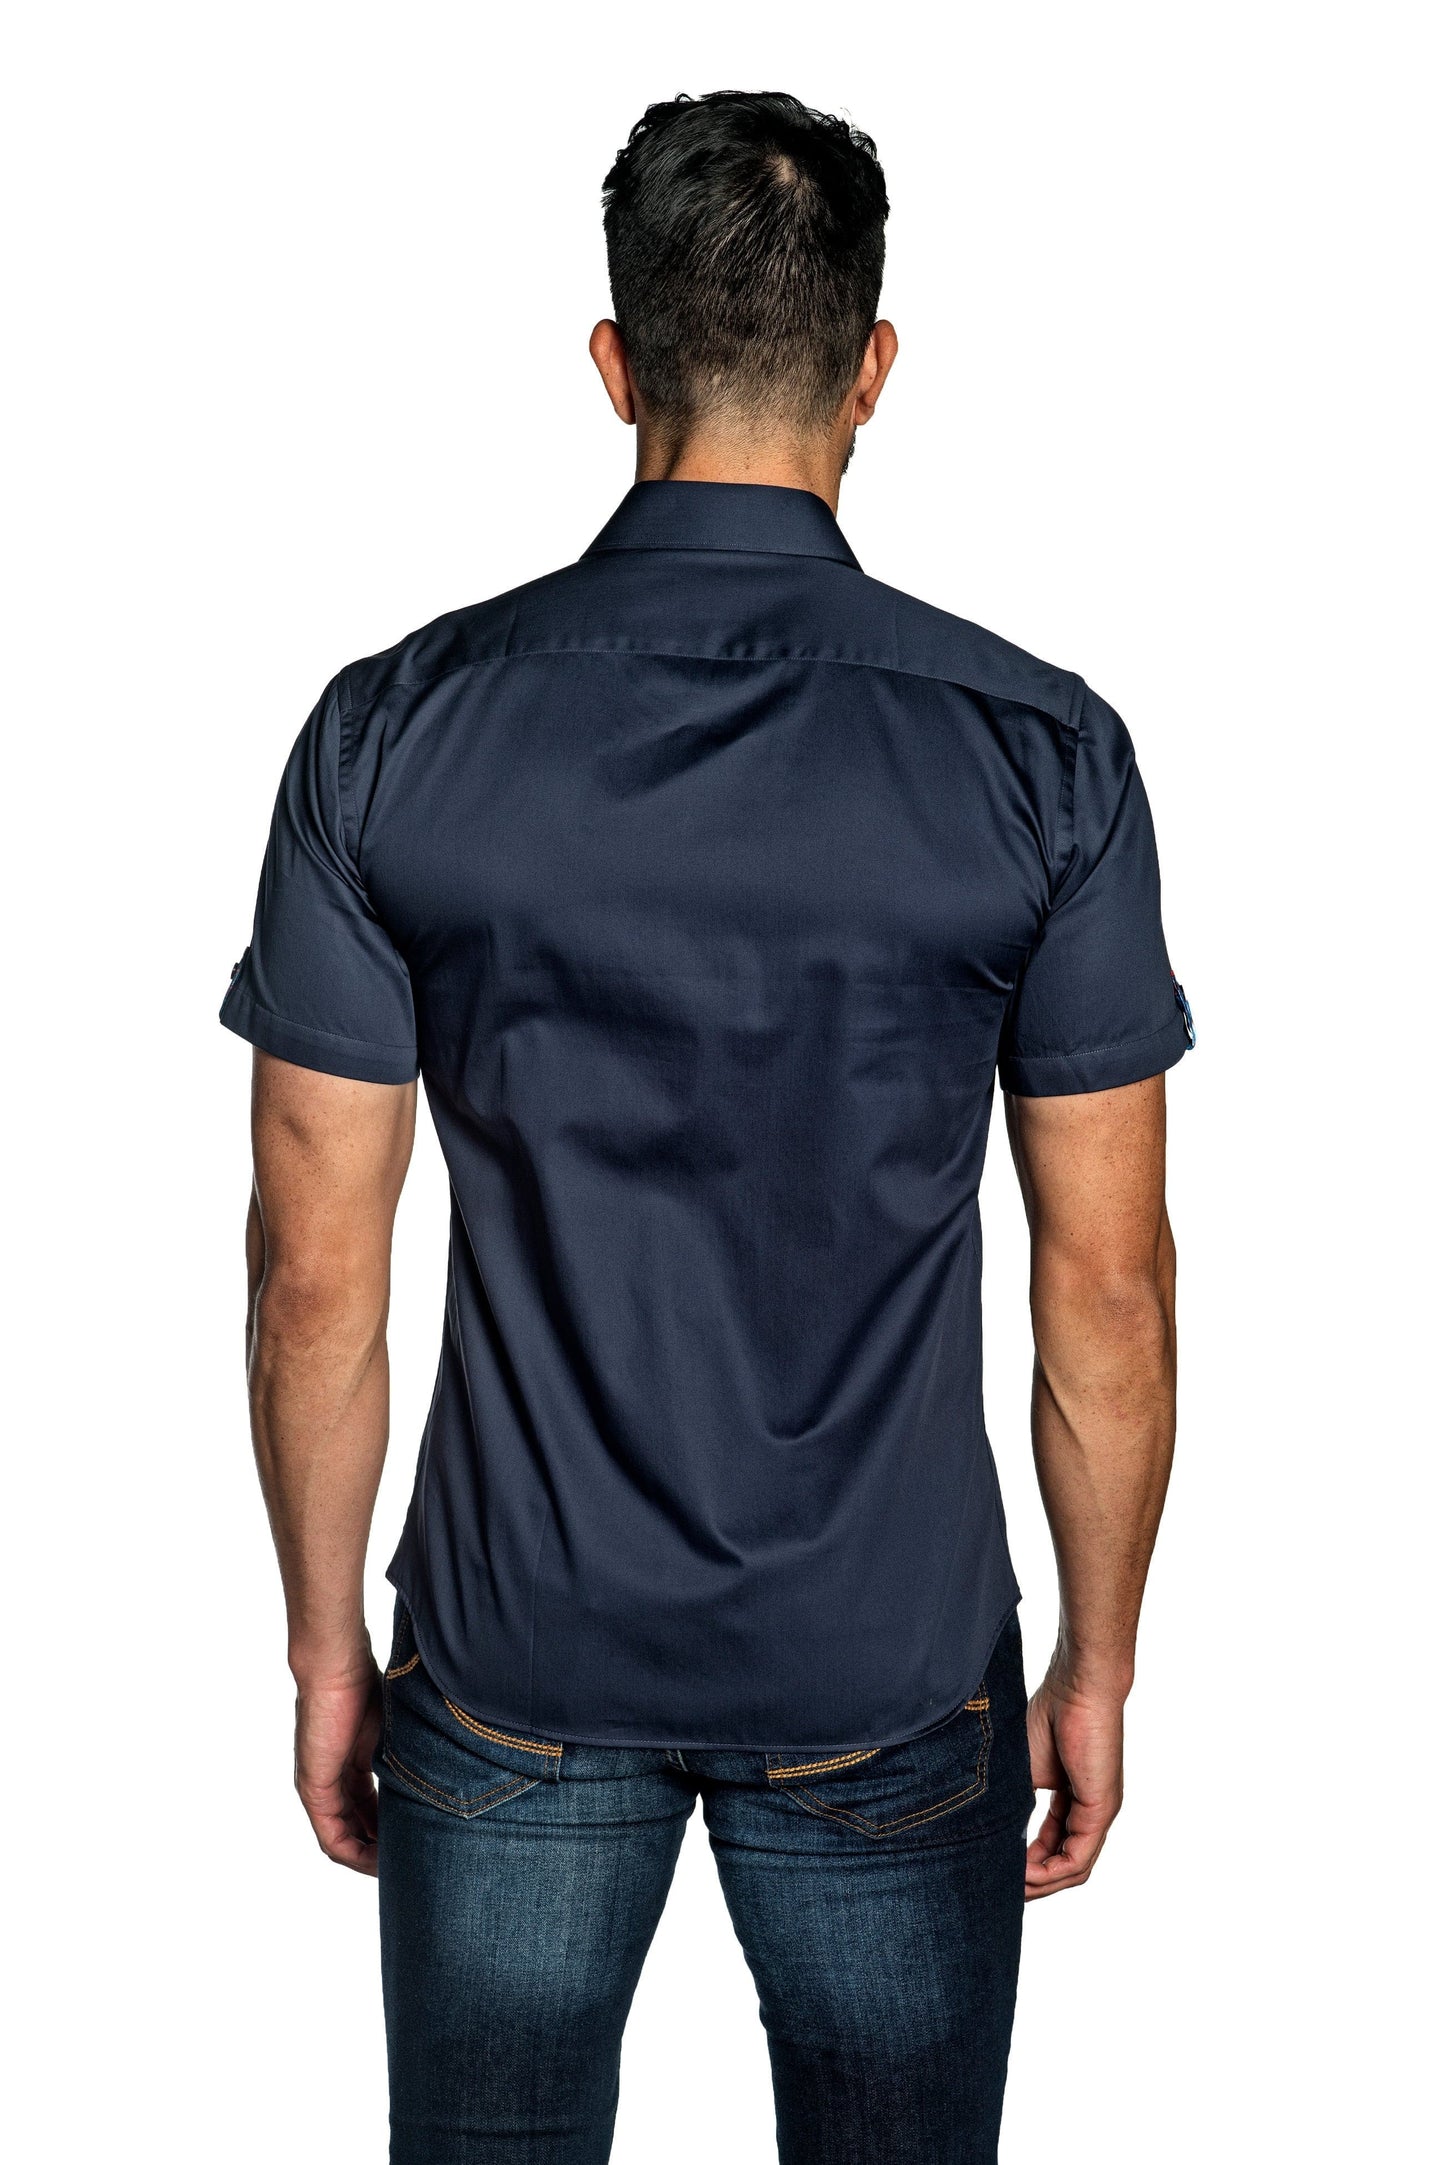 Navy Short Sleeve Shirt T-168SS - Back - Jared Lang